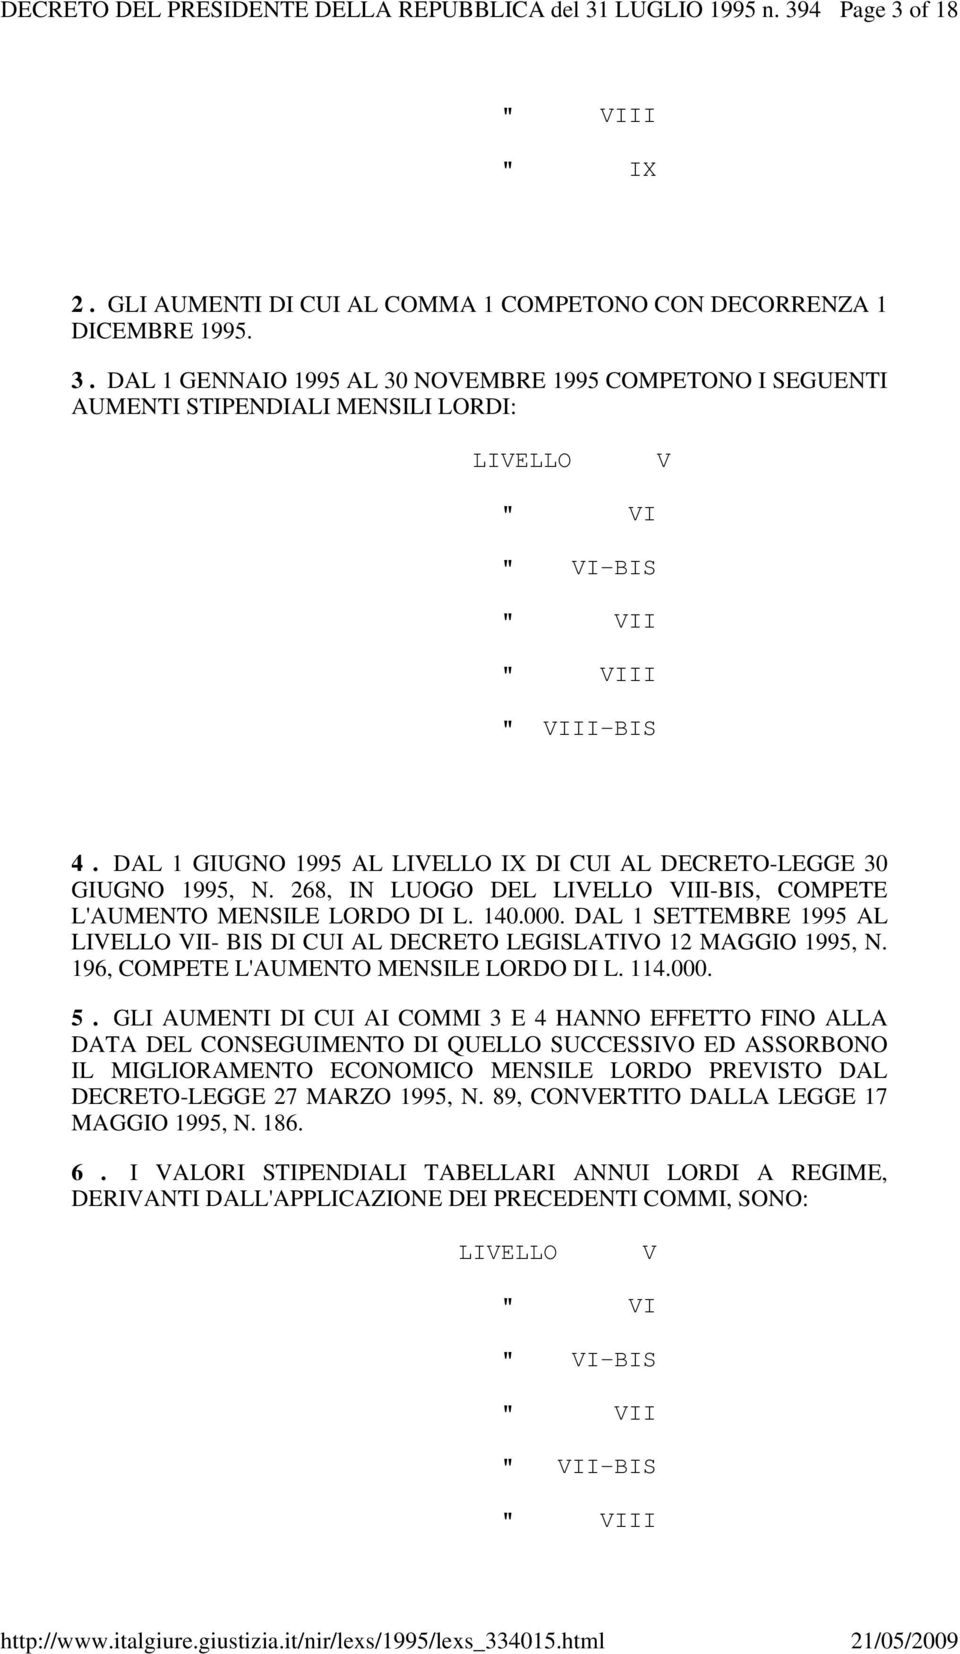 DAL 1 SETTEMBRE 1995 AL LIVELLO VII- BIS DI CUI AL DECRETO LEGISLATIVO 12 MAGGIO 1995, N. 196, COMPETE L'AUMENTO MENSILE LORDO DI L. 114.000. 5.